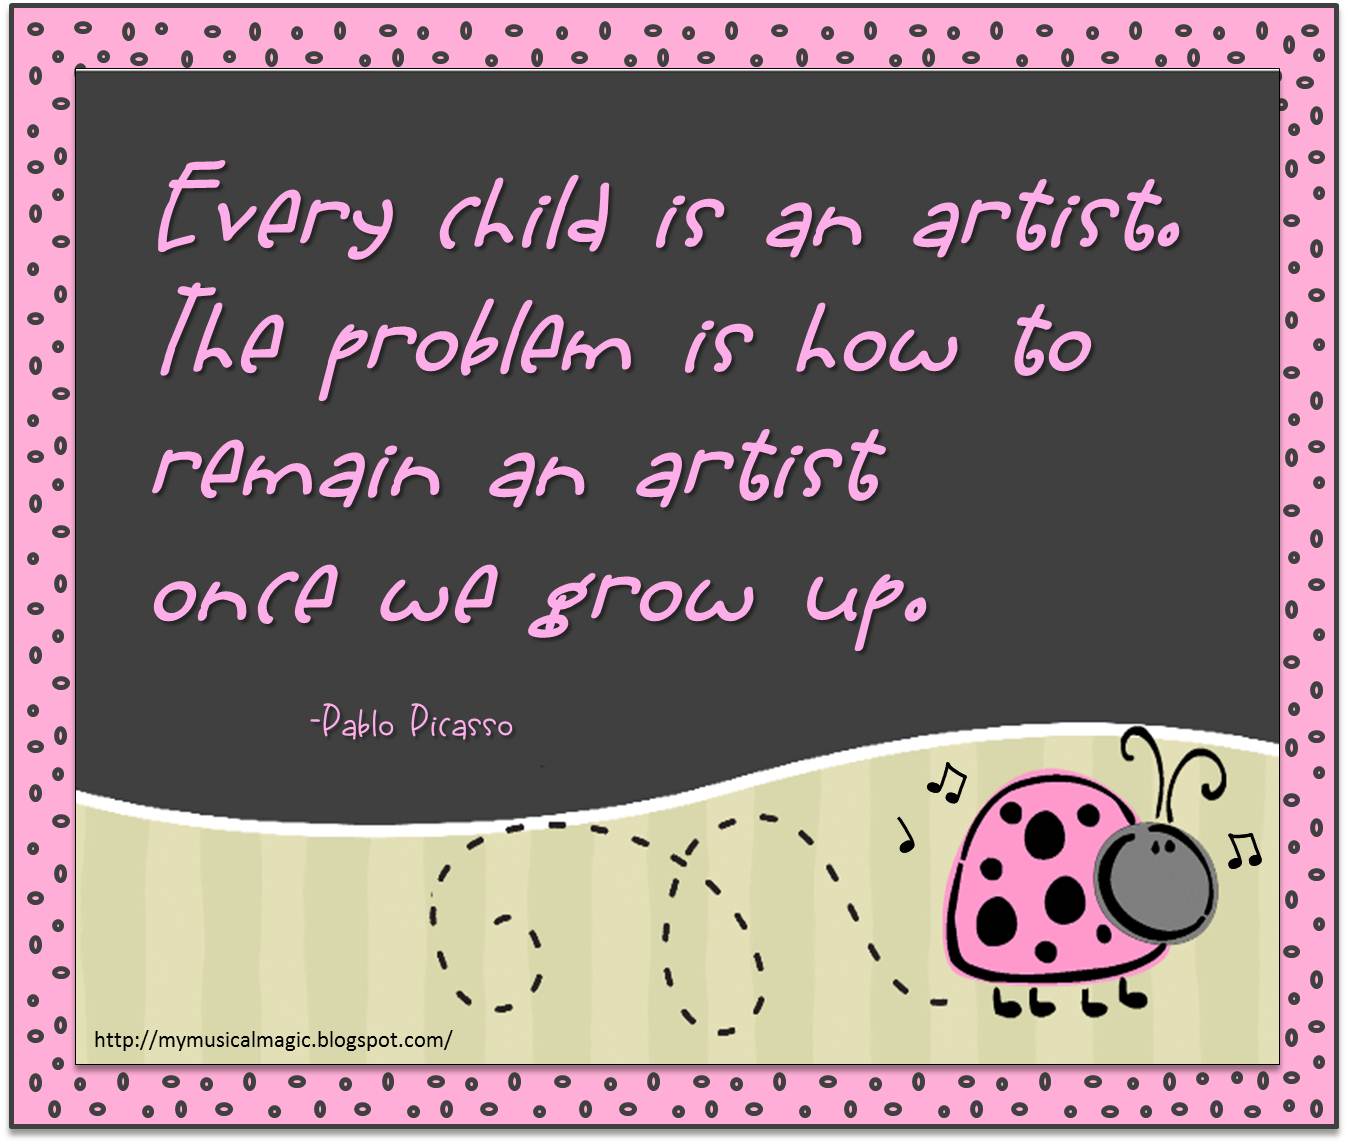 Every+child+is+an+artist.jpg